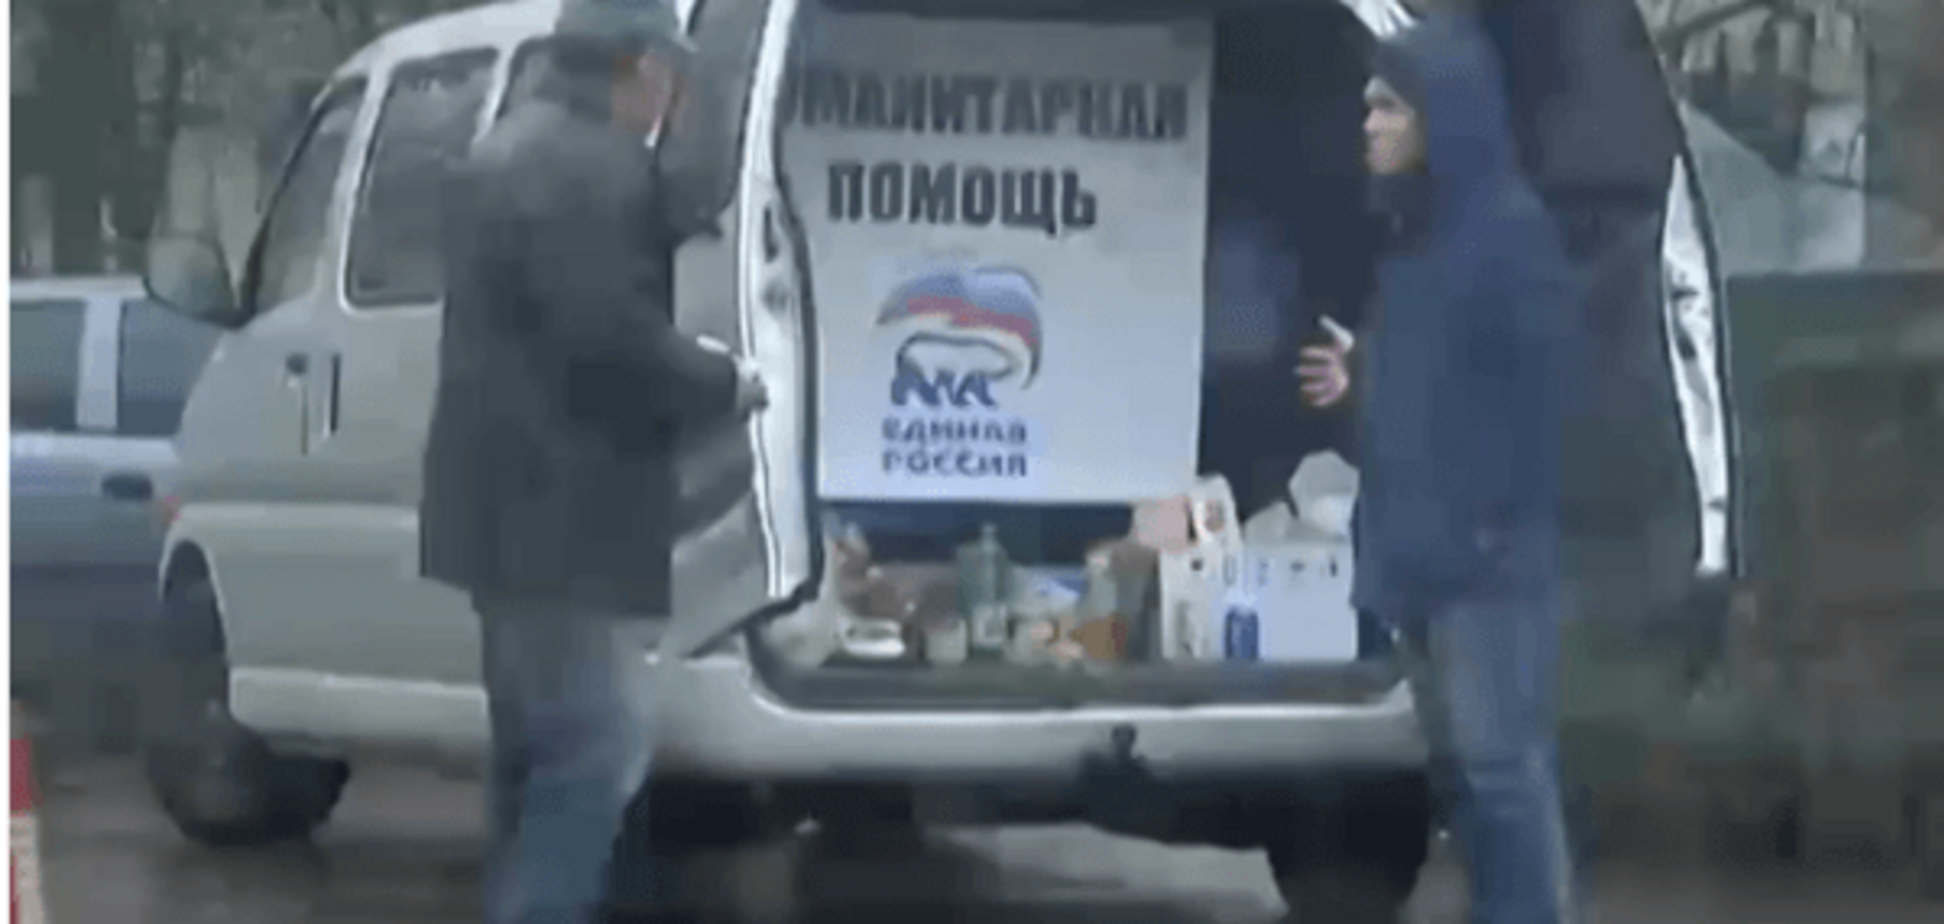 Перевірка на 'вошивість': кияни запропонували безкоштовні продукти від Путіна